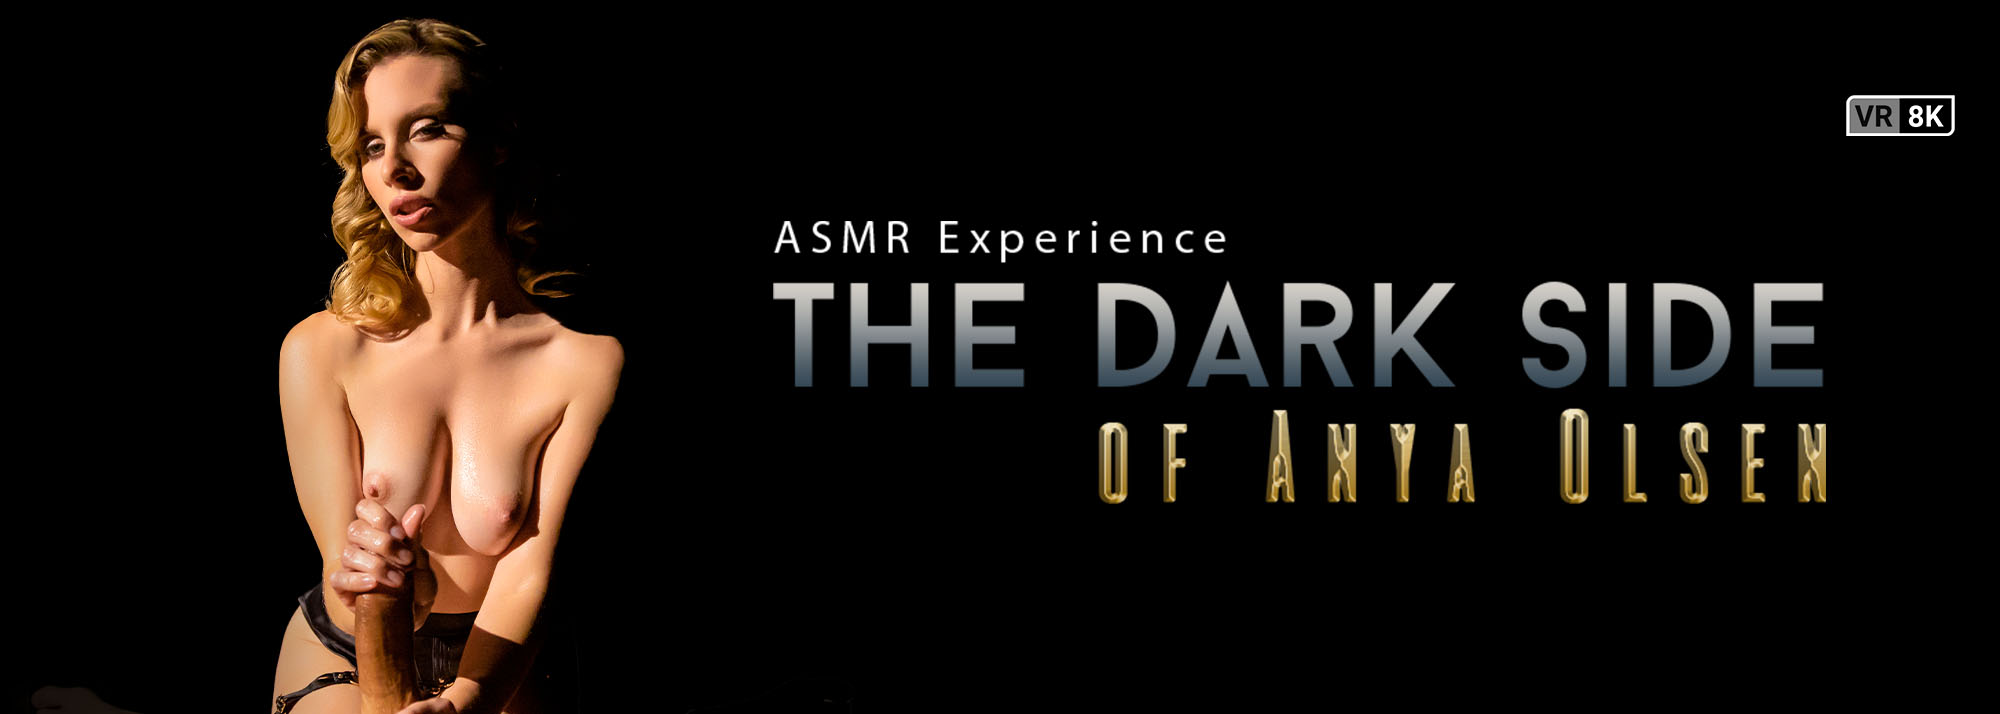 The Dark Side of Anya Olsen (ASMR Experience) - VR Porn Video, Starring: Anya Olsen VR